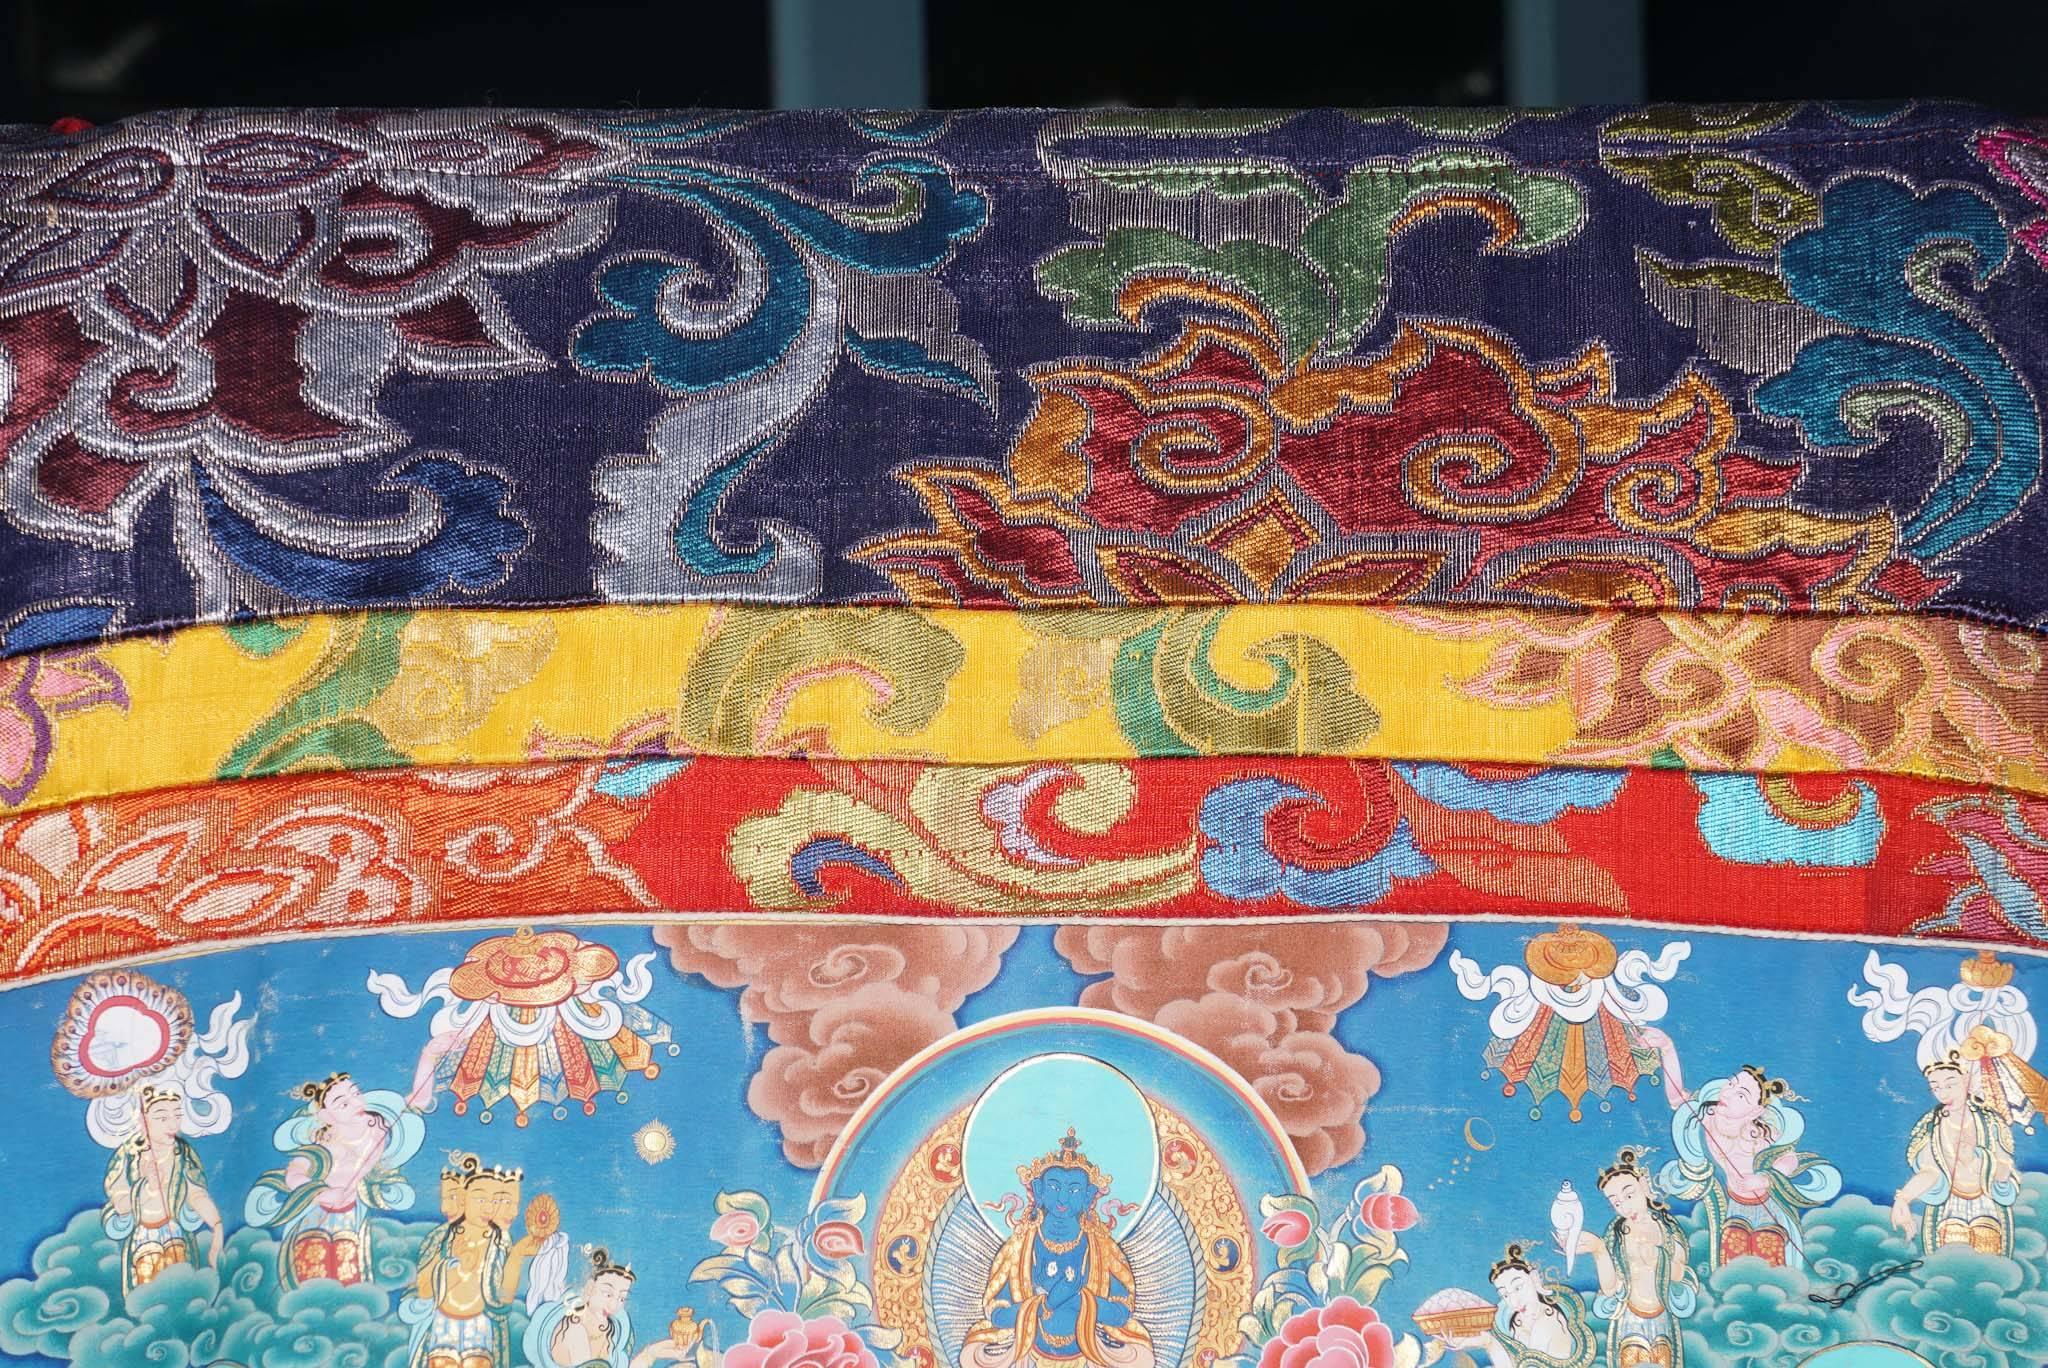 Hand-Painted on Silk Thankha, Modern, Tibet/China 3